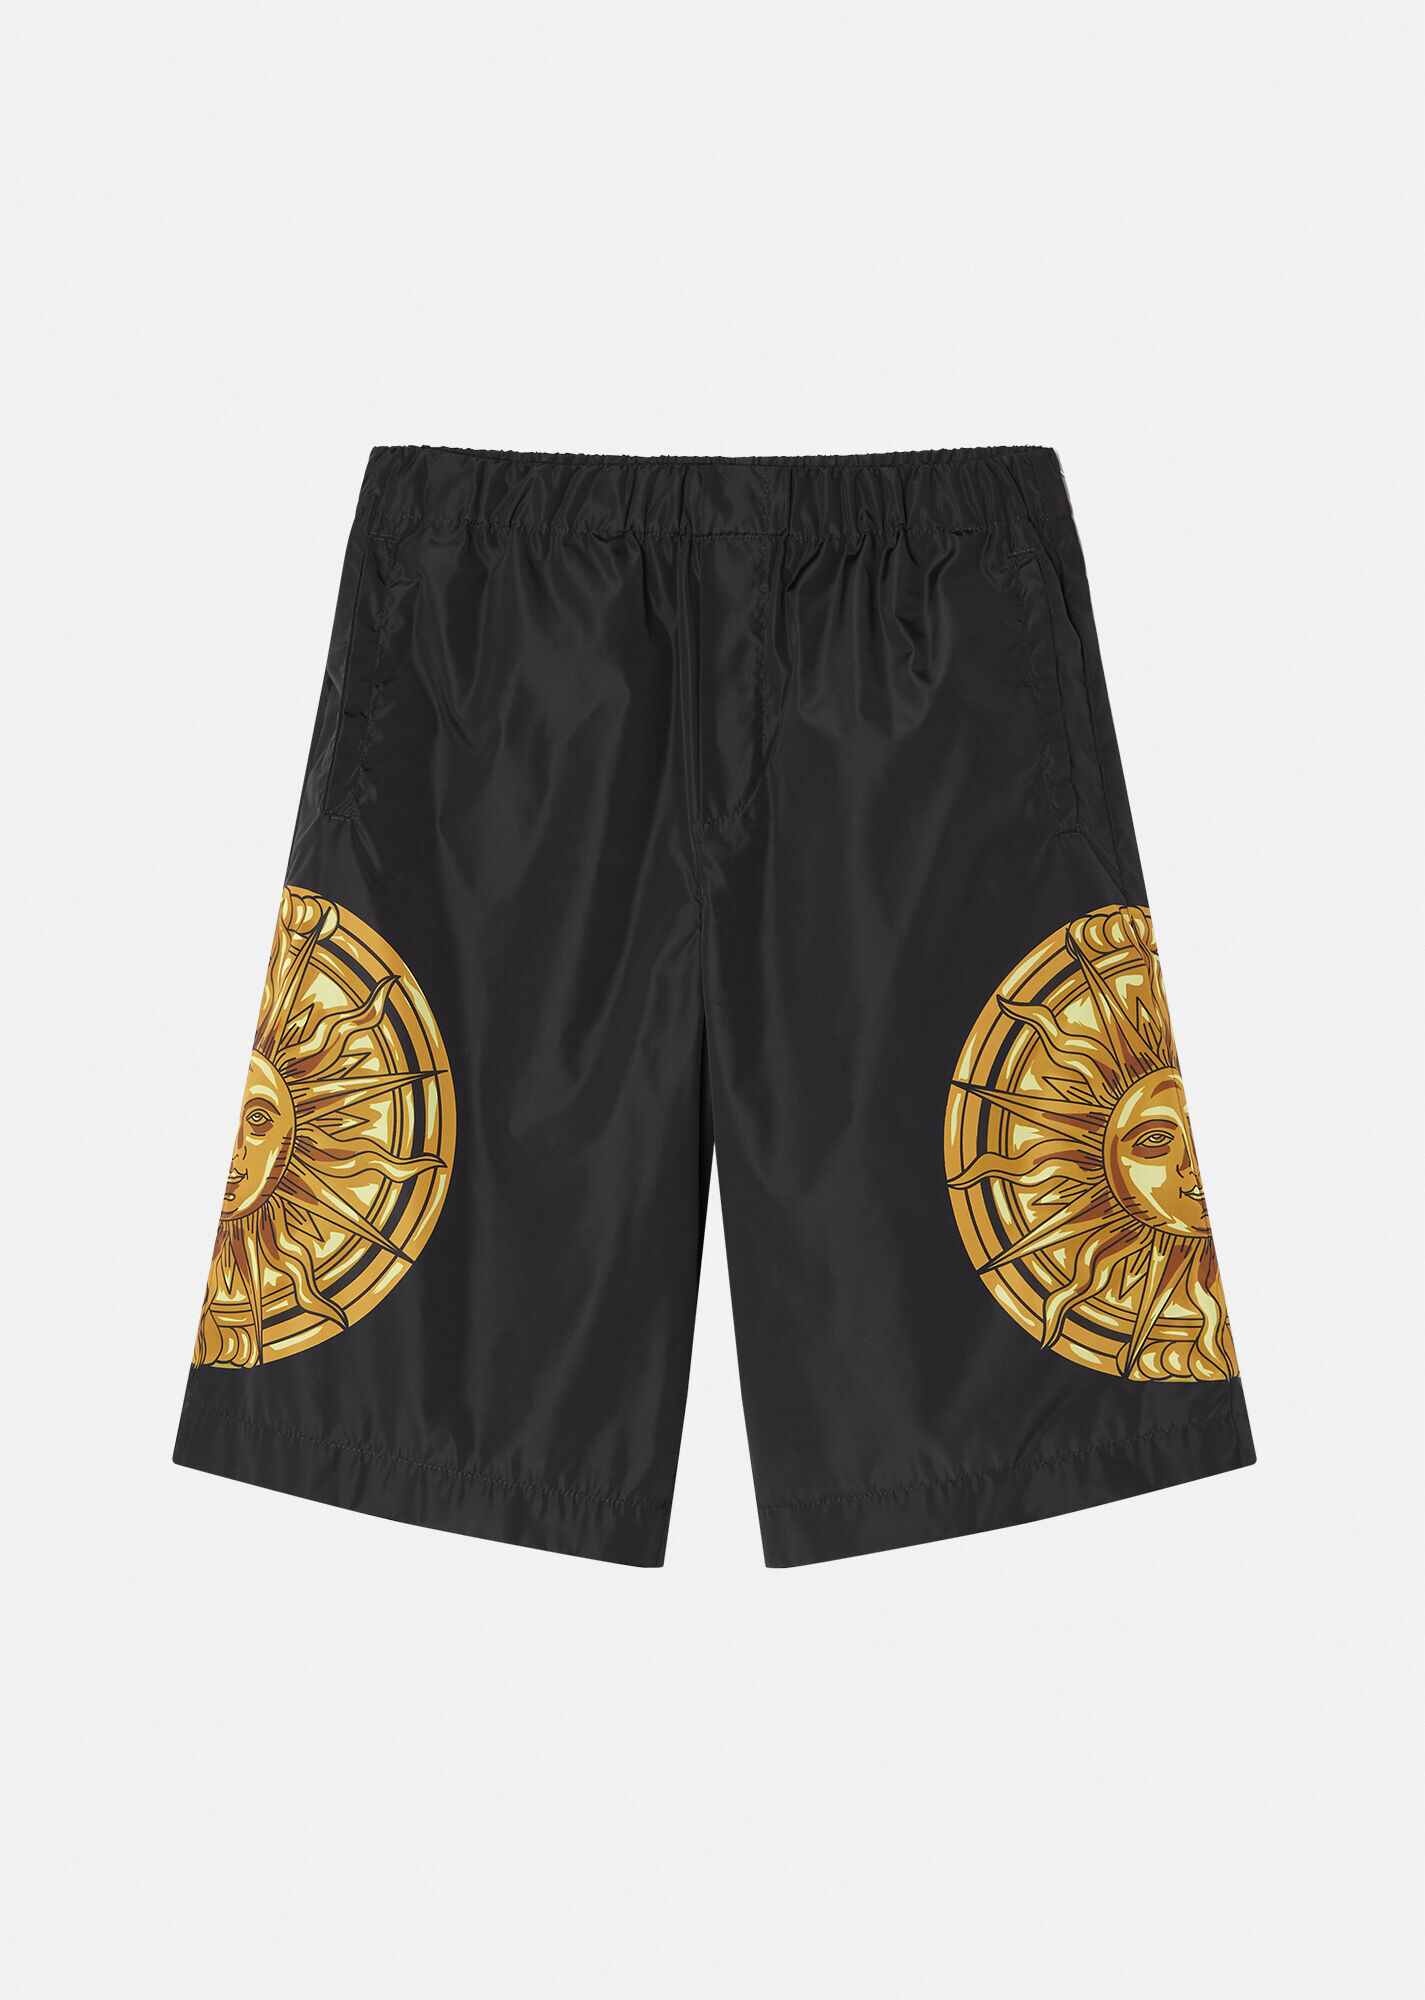 Garland Sun Shorts - 1